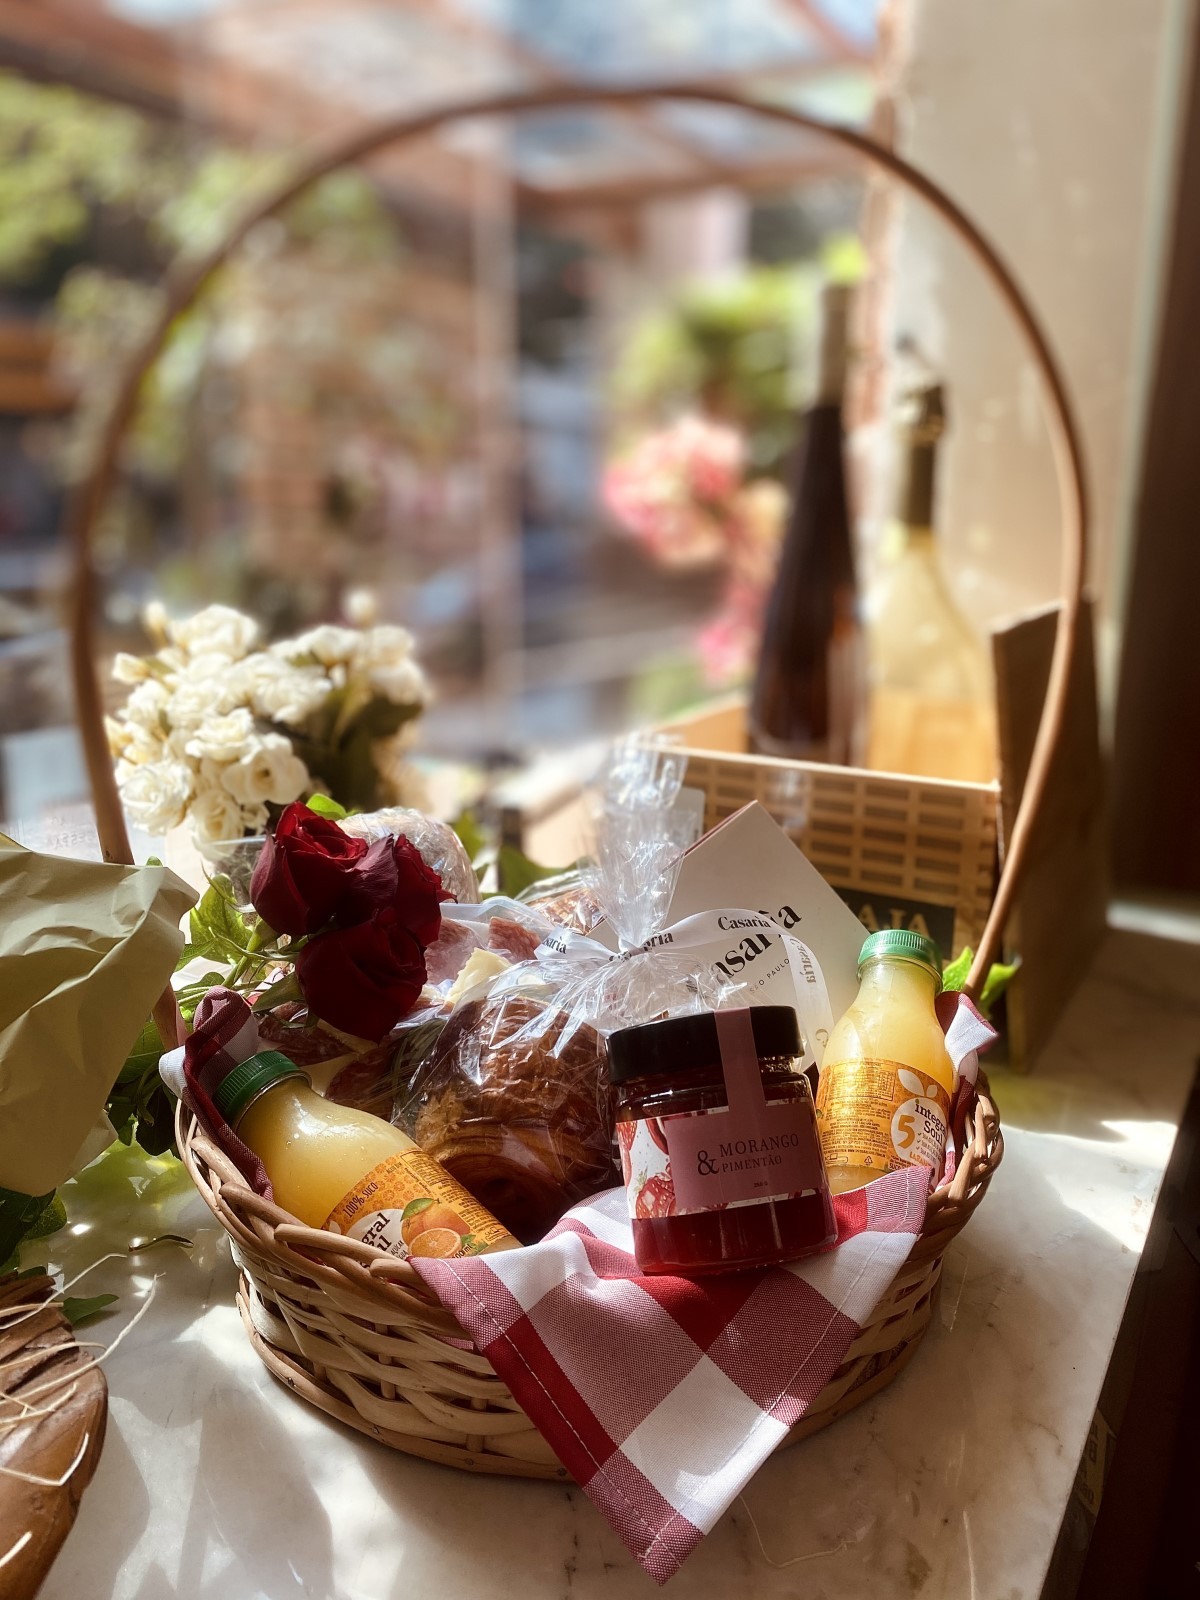 Casarìa celebra Dia das Mães com doces especiais e cesta para presentear (Foto: Divulgação )